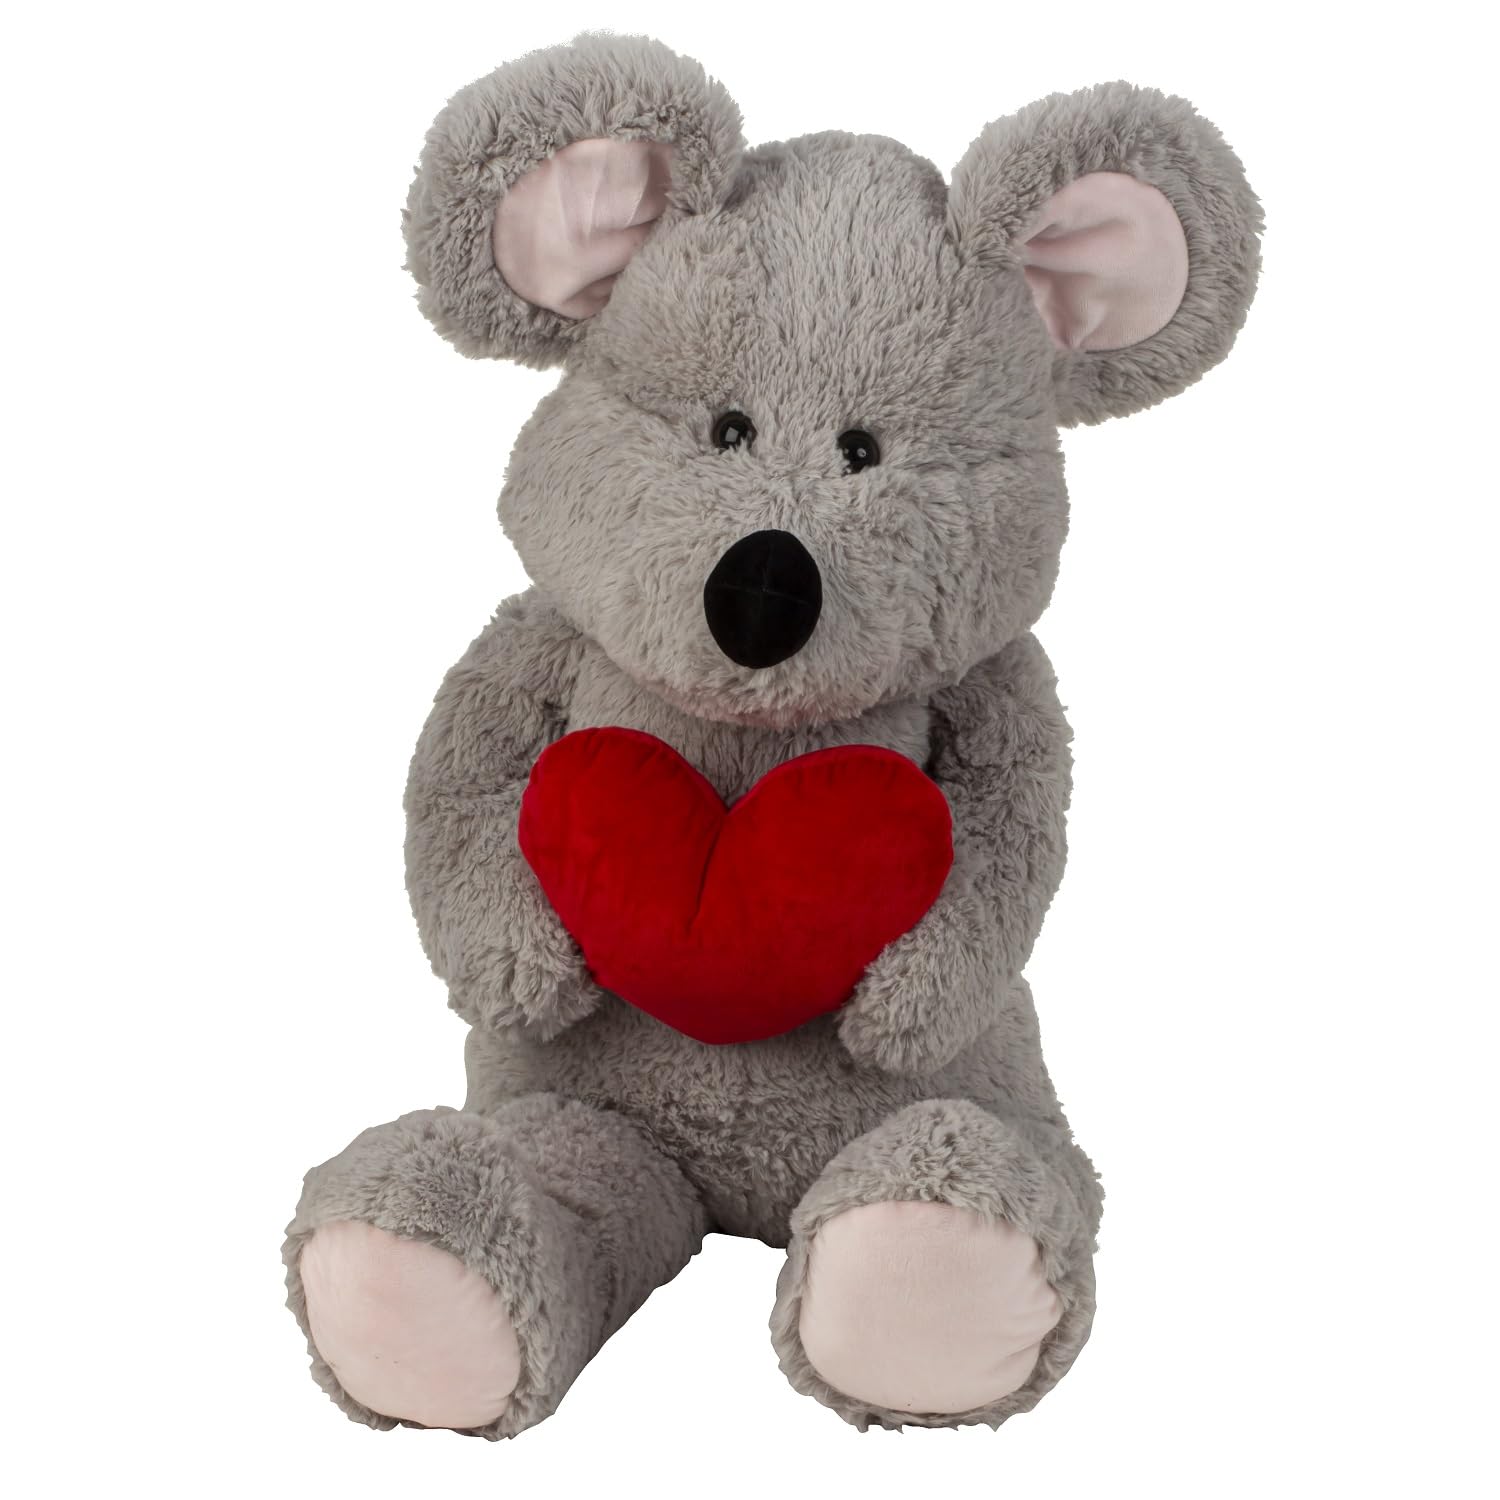 Geschenkestadl XXL Maus mit Herz 100 cm groß Kuscheltier Plüschtier Grau Stofftier